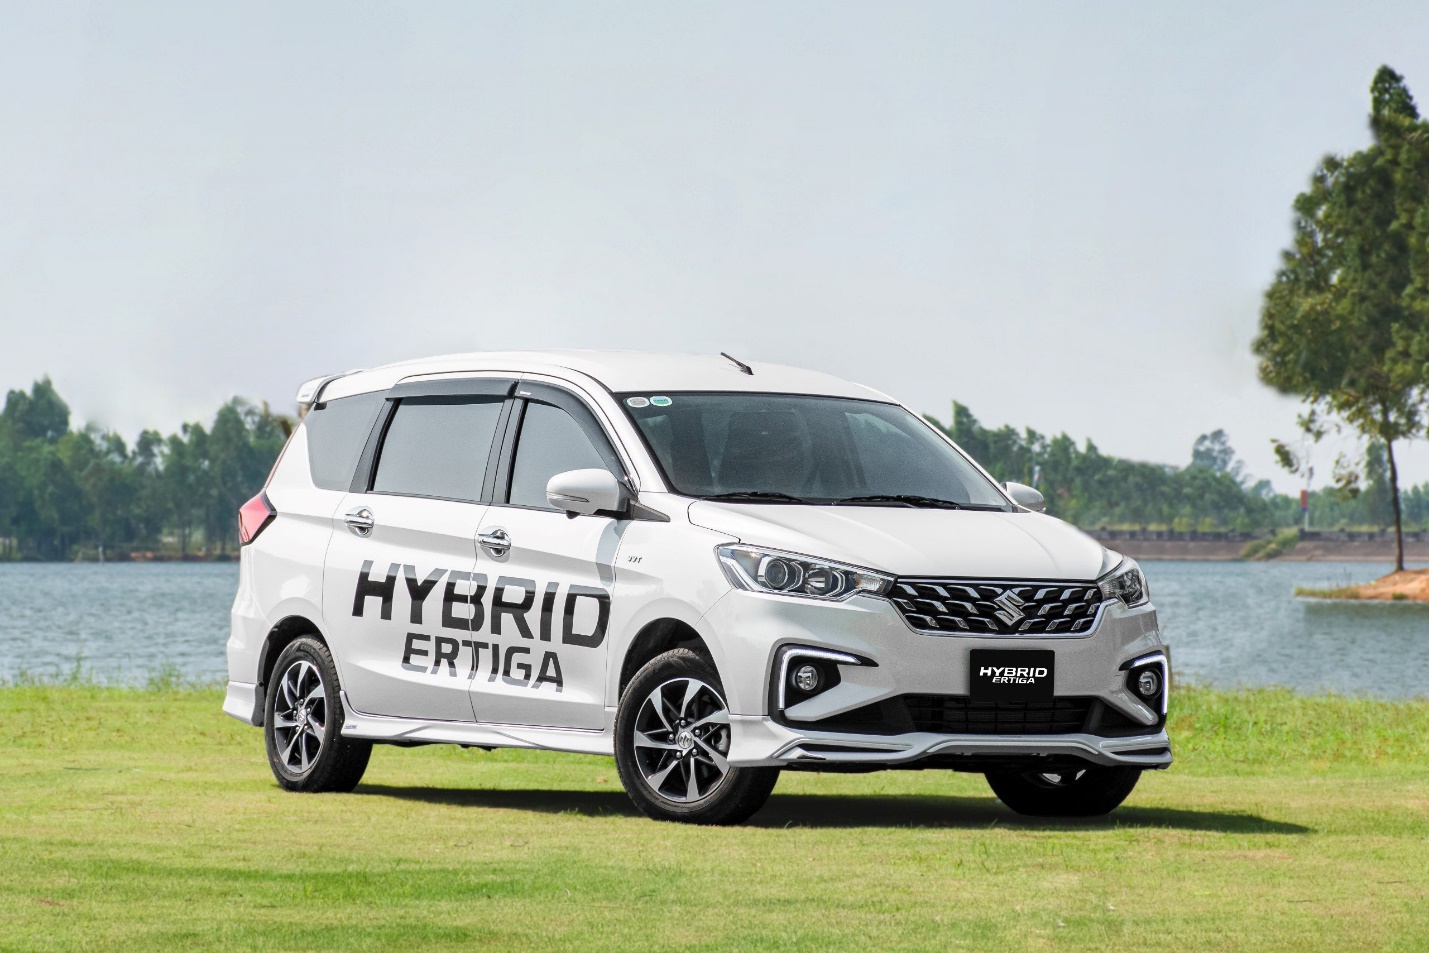 Suzuki Hybrid Ertiga ưu đãi còn 454 triệu đồng, thấp nhất phân khúc- Ảnh 1.